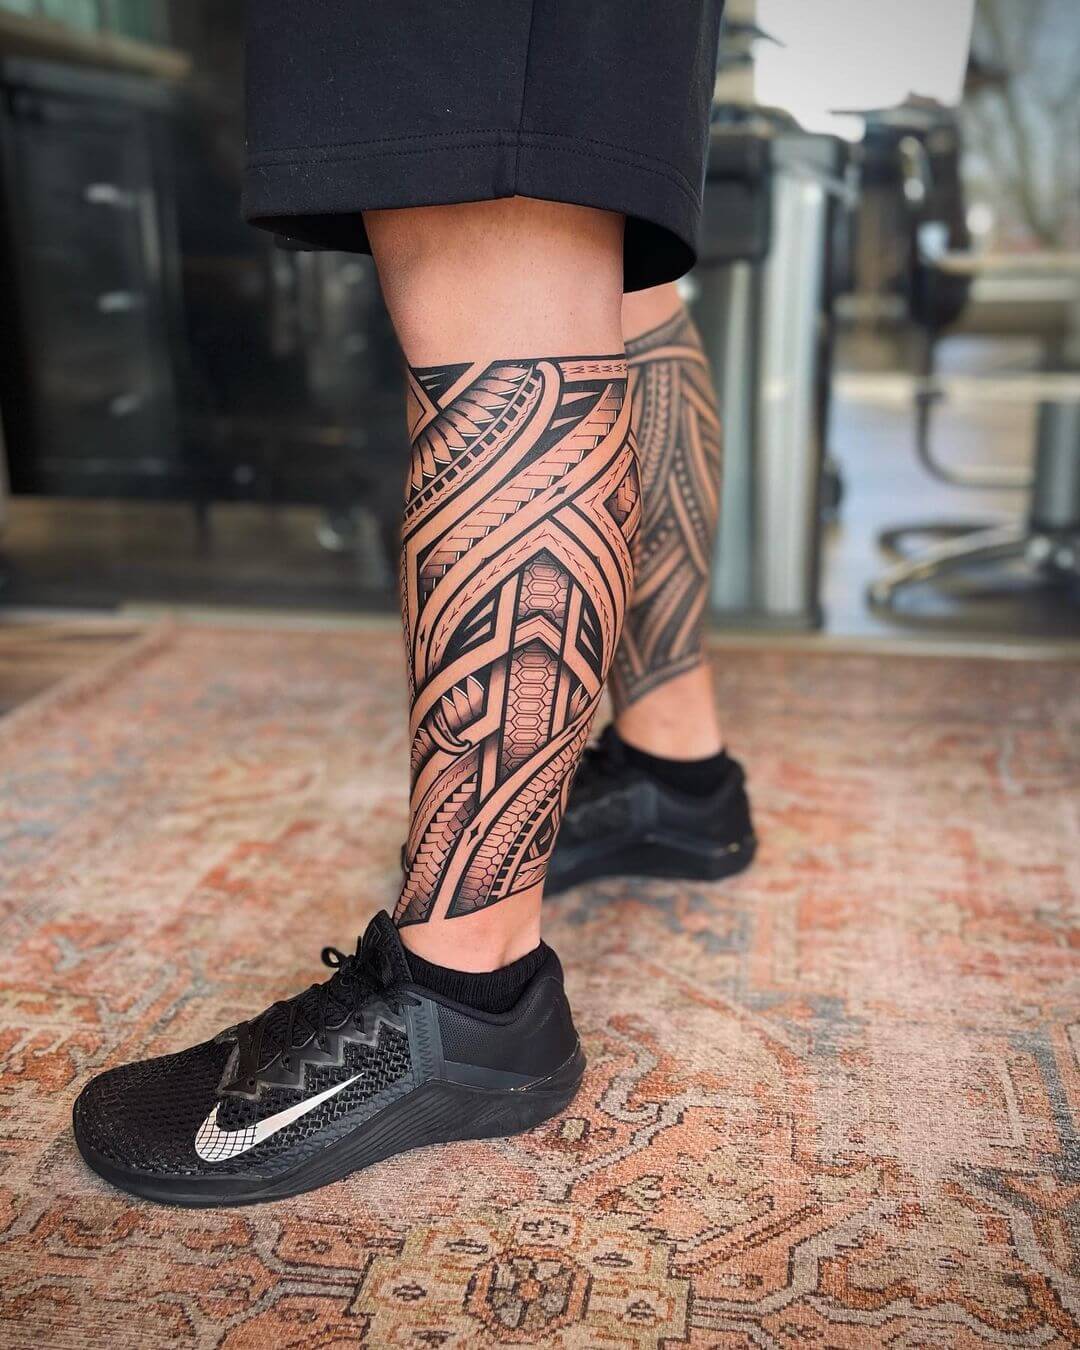 tribal leg tattoo ideas